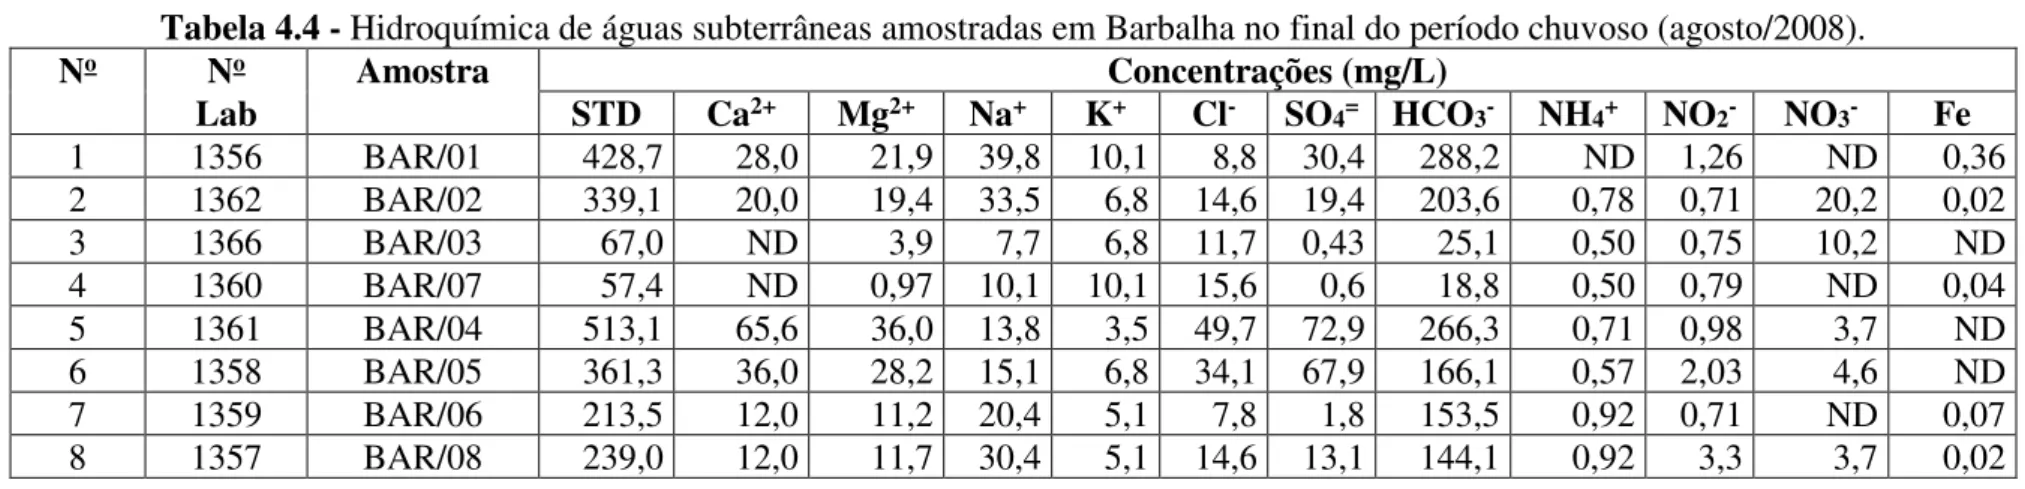 Tabela 4.4 - Hidroquímica de águas subterrâneas amostradas em Barbalha no final do período chuvoso (agosto/2008)